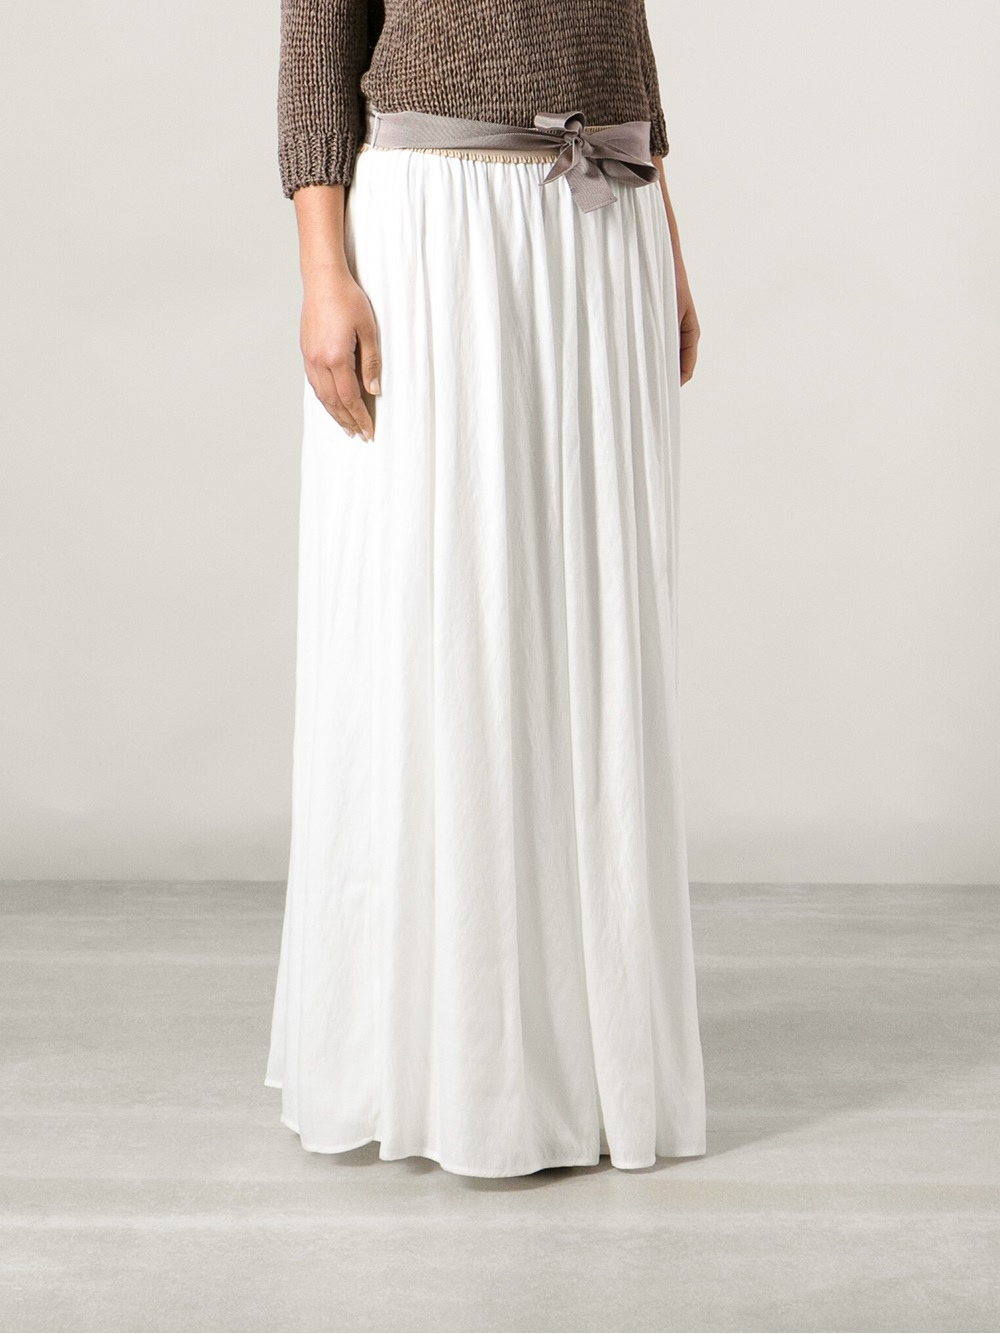 White Skirt Long 34